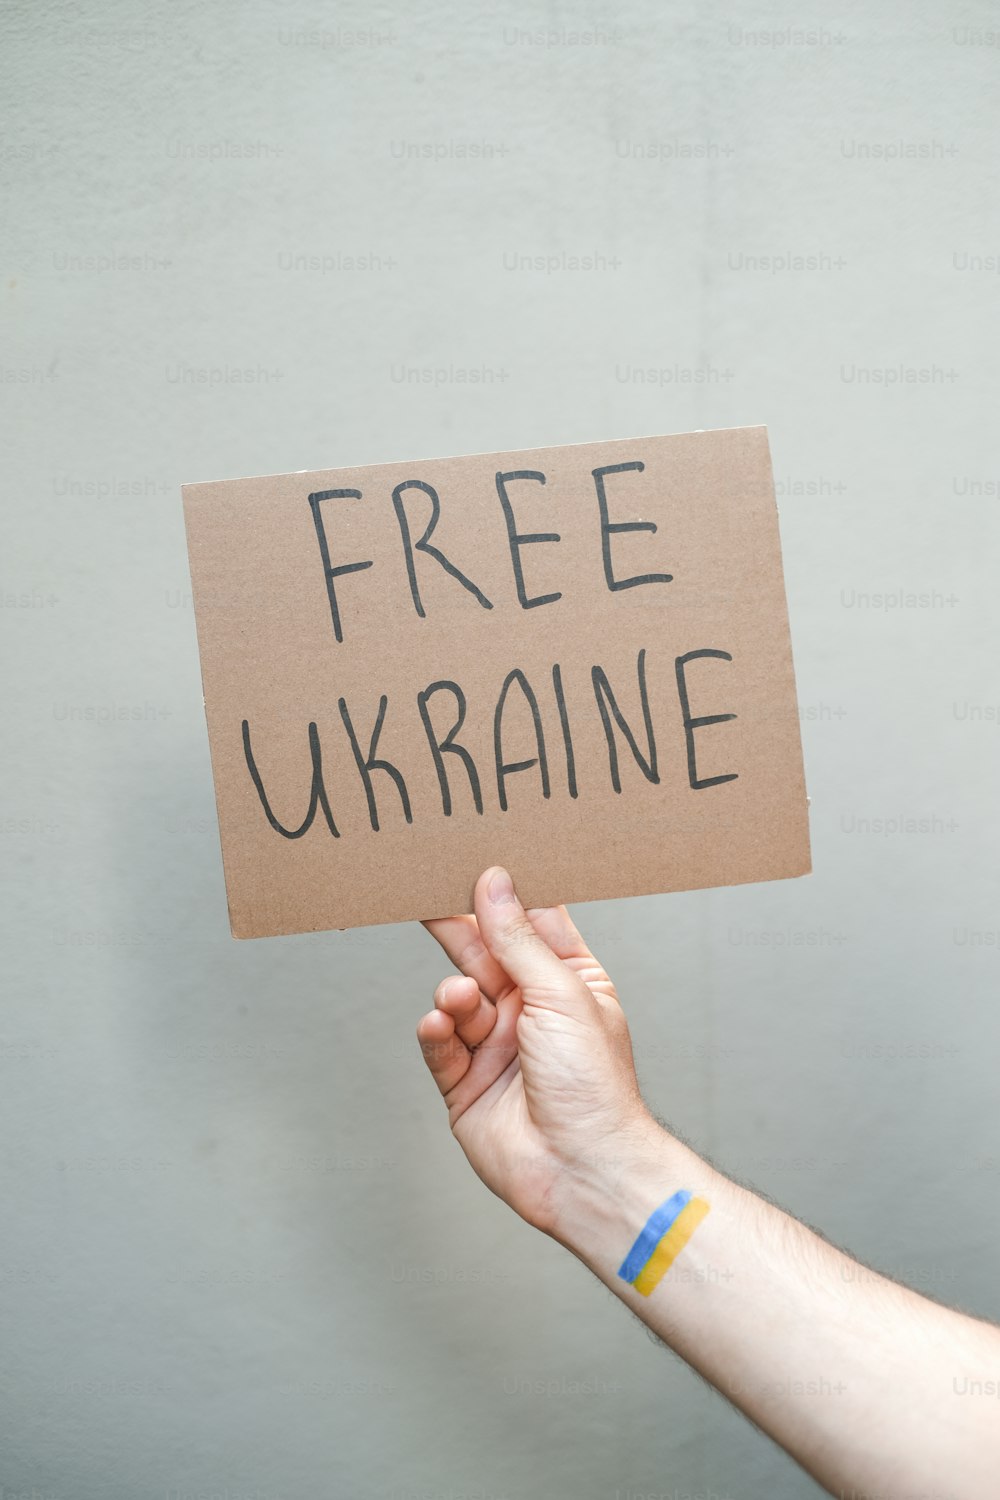 自由ウクライナと書かれた看板を持っている人